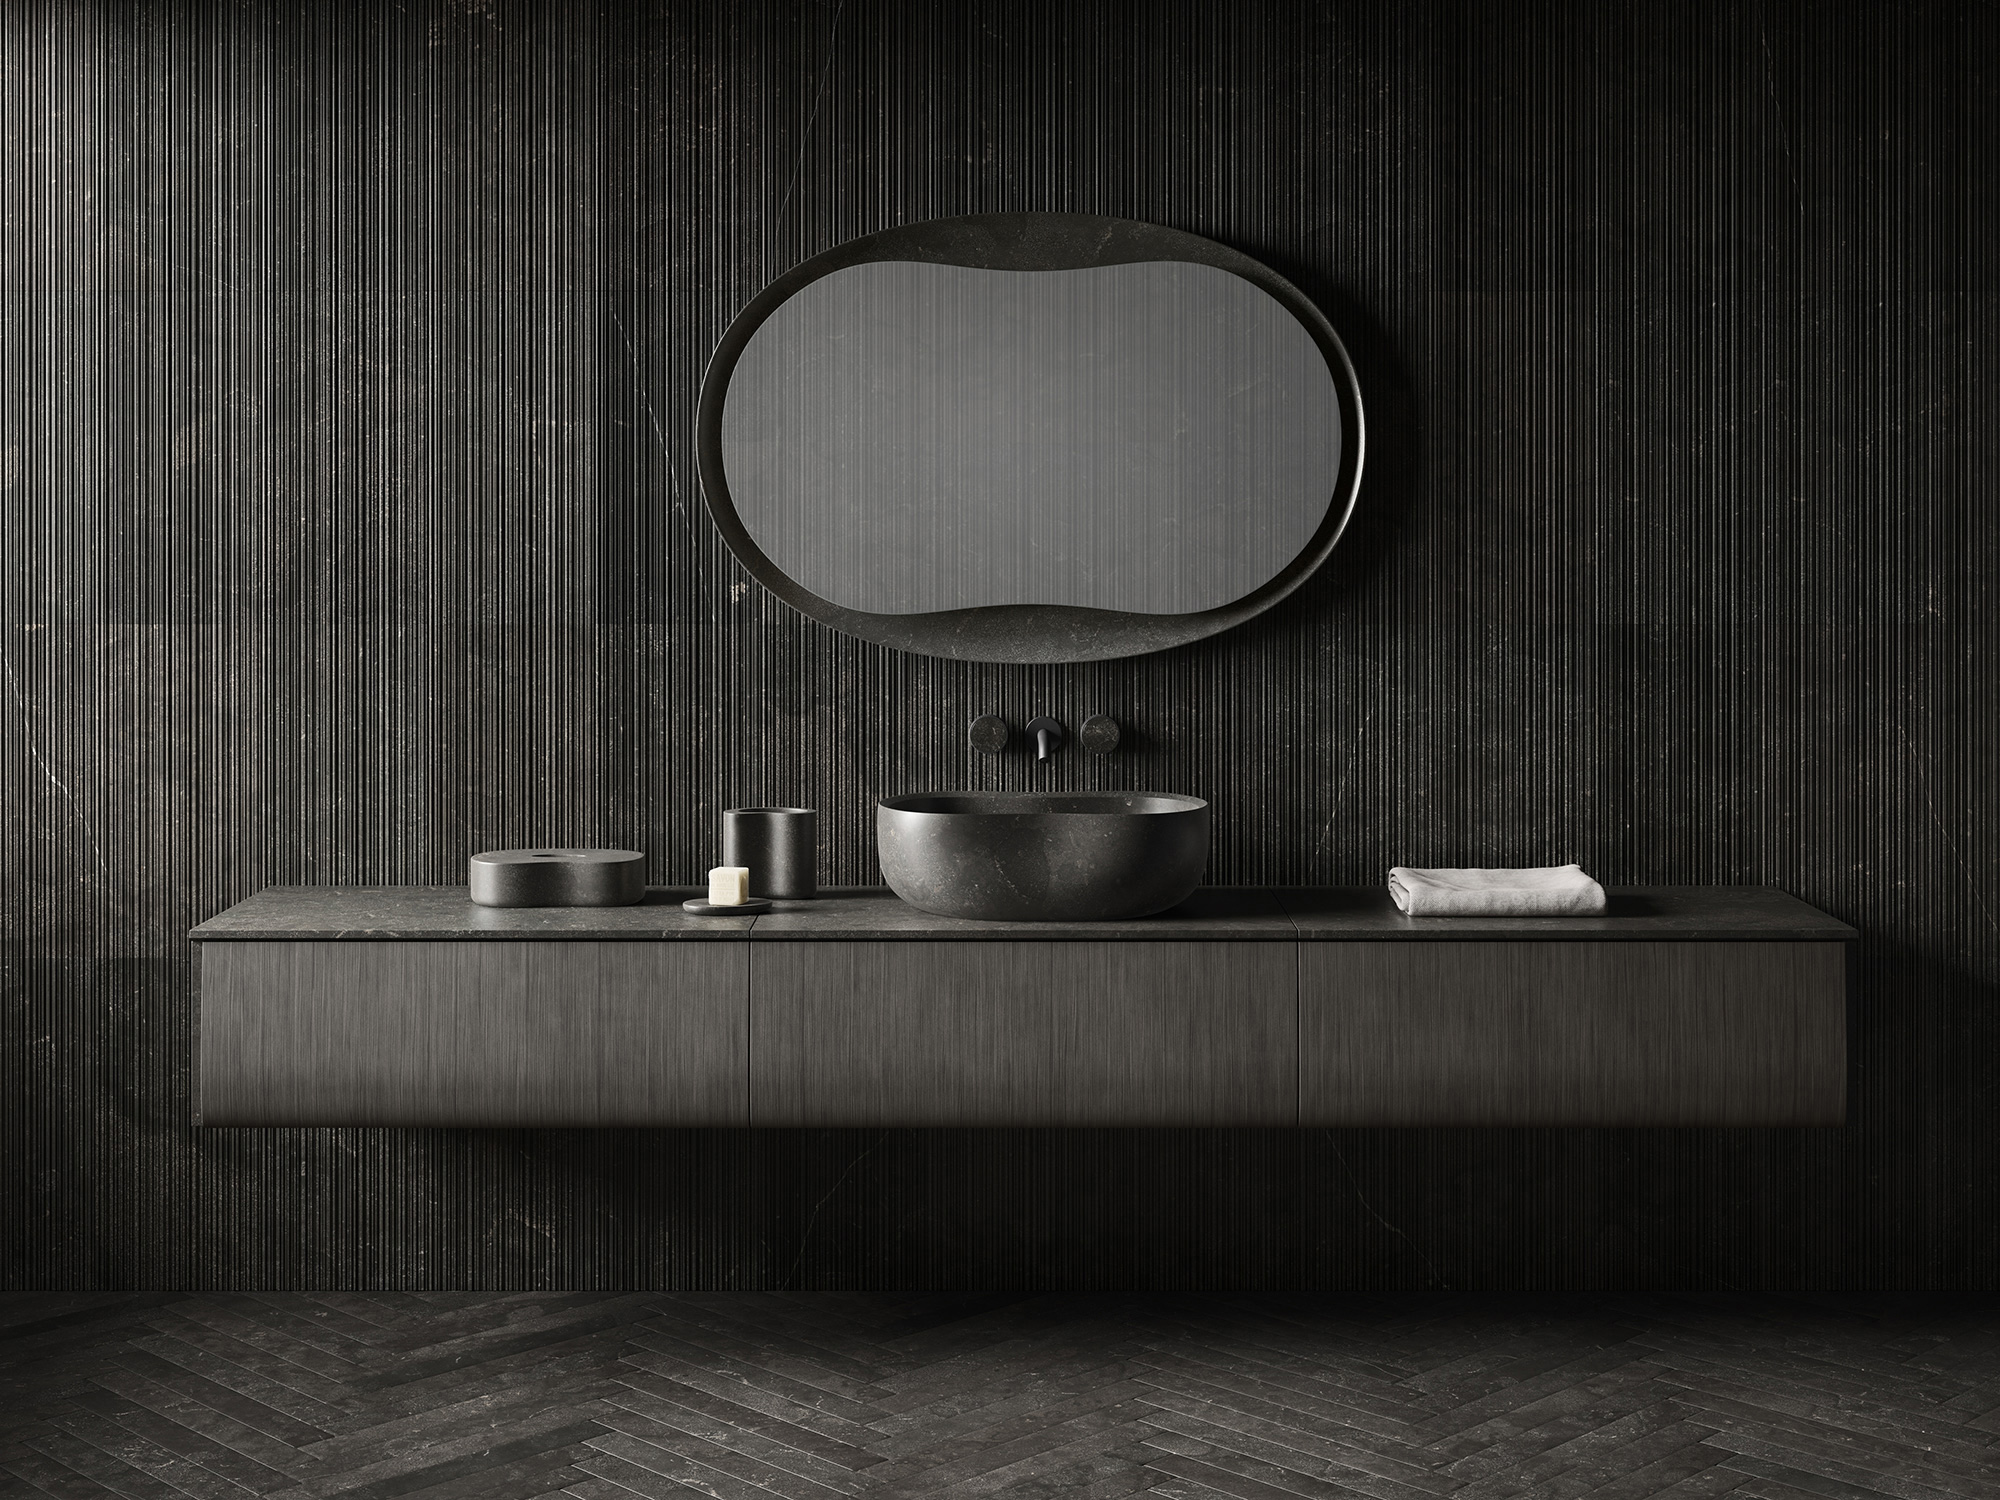 La sauna invisibile - il blog di Kbwindow. Dal design ai colori, dagli  stili alle finiture, dai materiali ai rivestimenti - Kbwindow - la tua  finestra su bagno e cucina. Una finestra